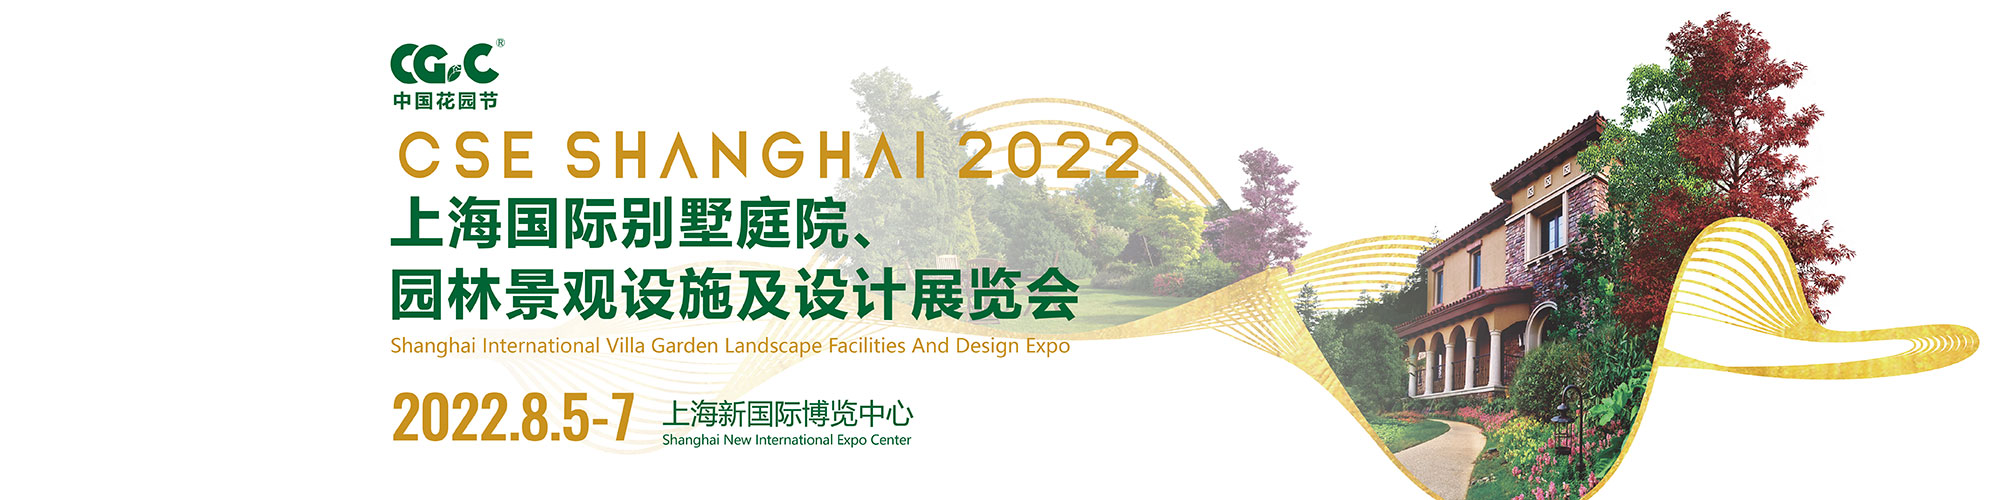 中文首页中部-上海国际别墅庭院、园林景观设施及设计展览会